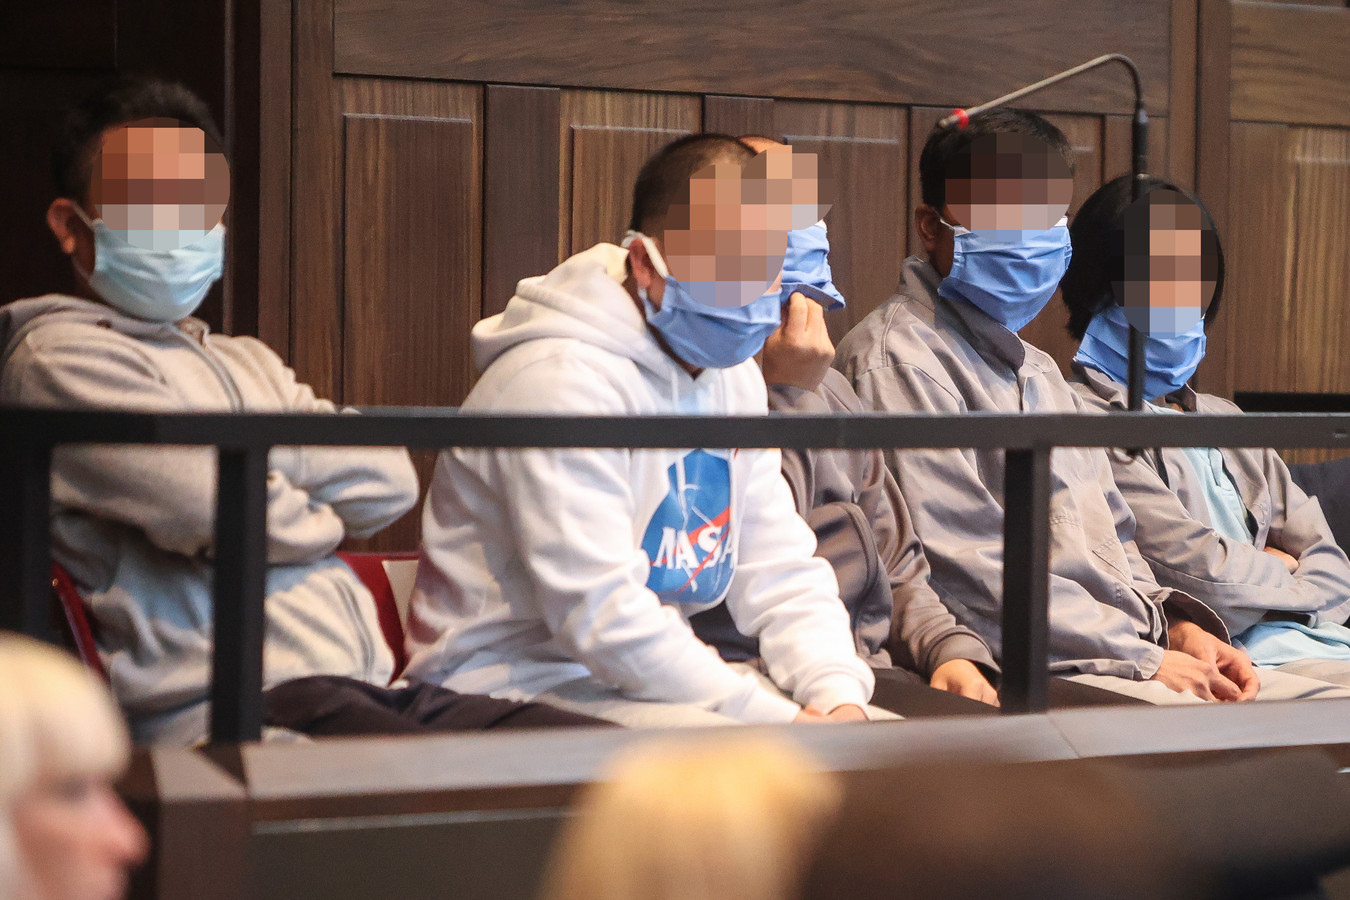 Vijf beklaagden zitten nog in voorhechtenis, waaronder links op de foto de vermeende leider Vo Van Hong